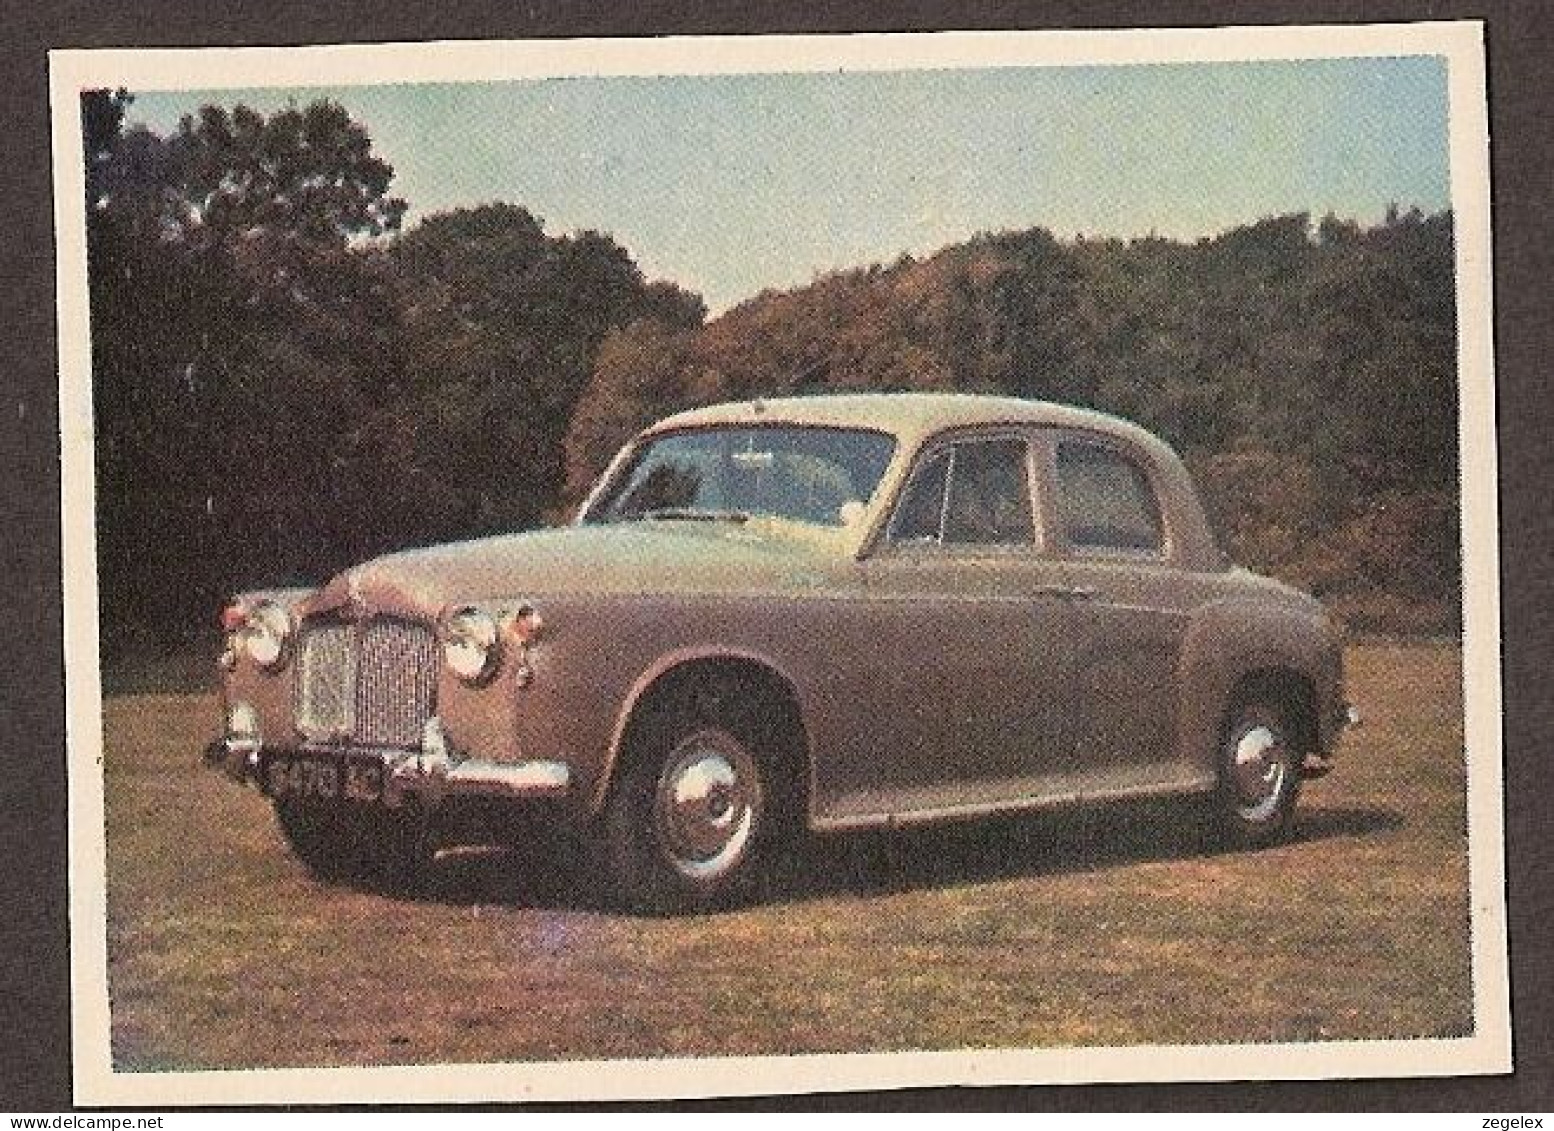 Rover 100 - 1962 - Automobile, Voiture, Oldtimer, Car. Voir Description, See  The Description. - Voitures